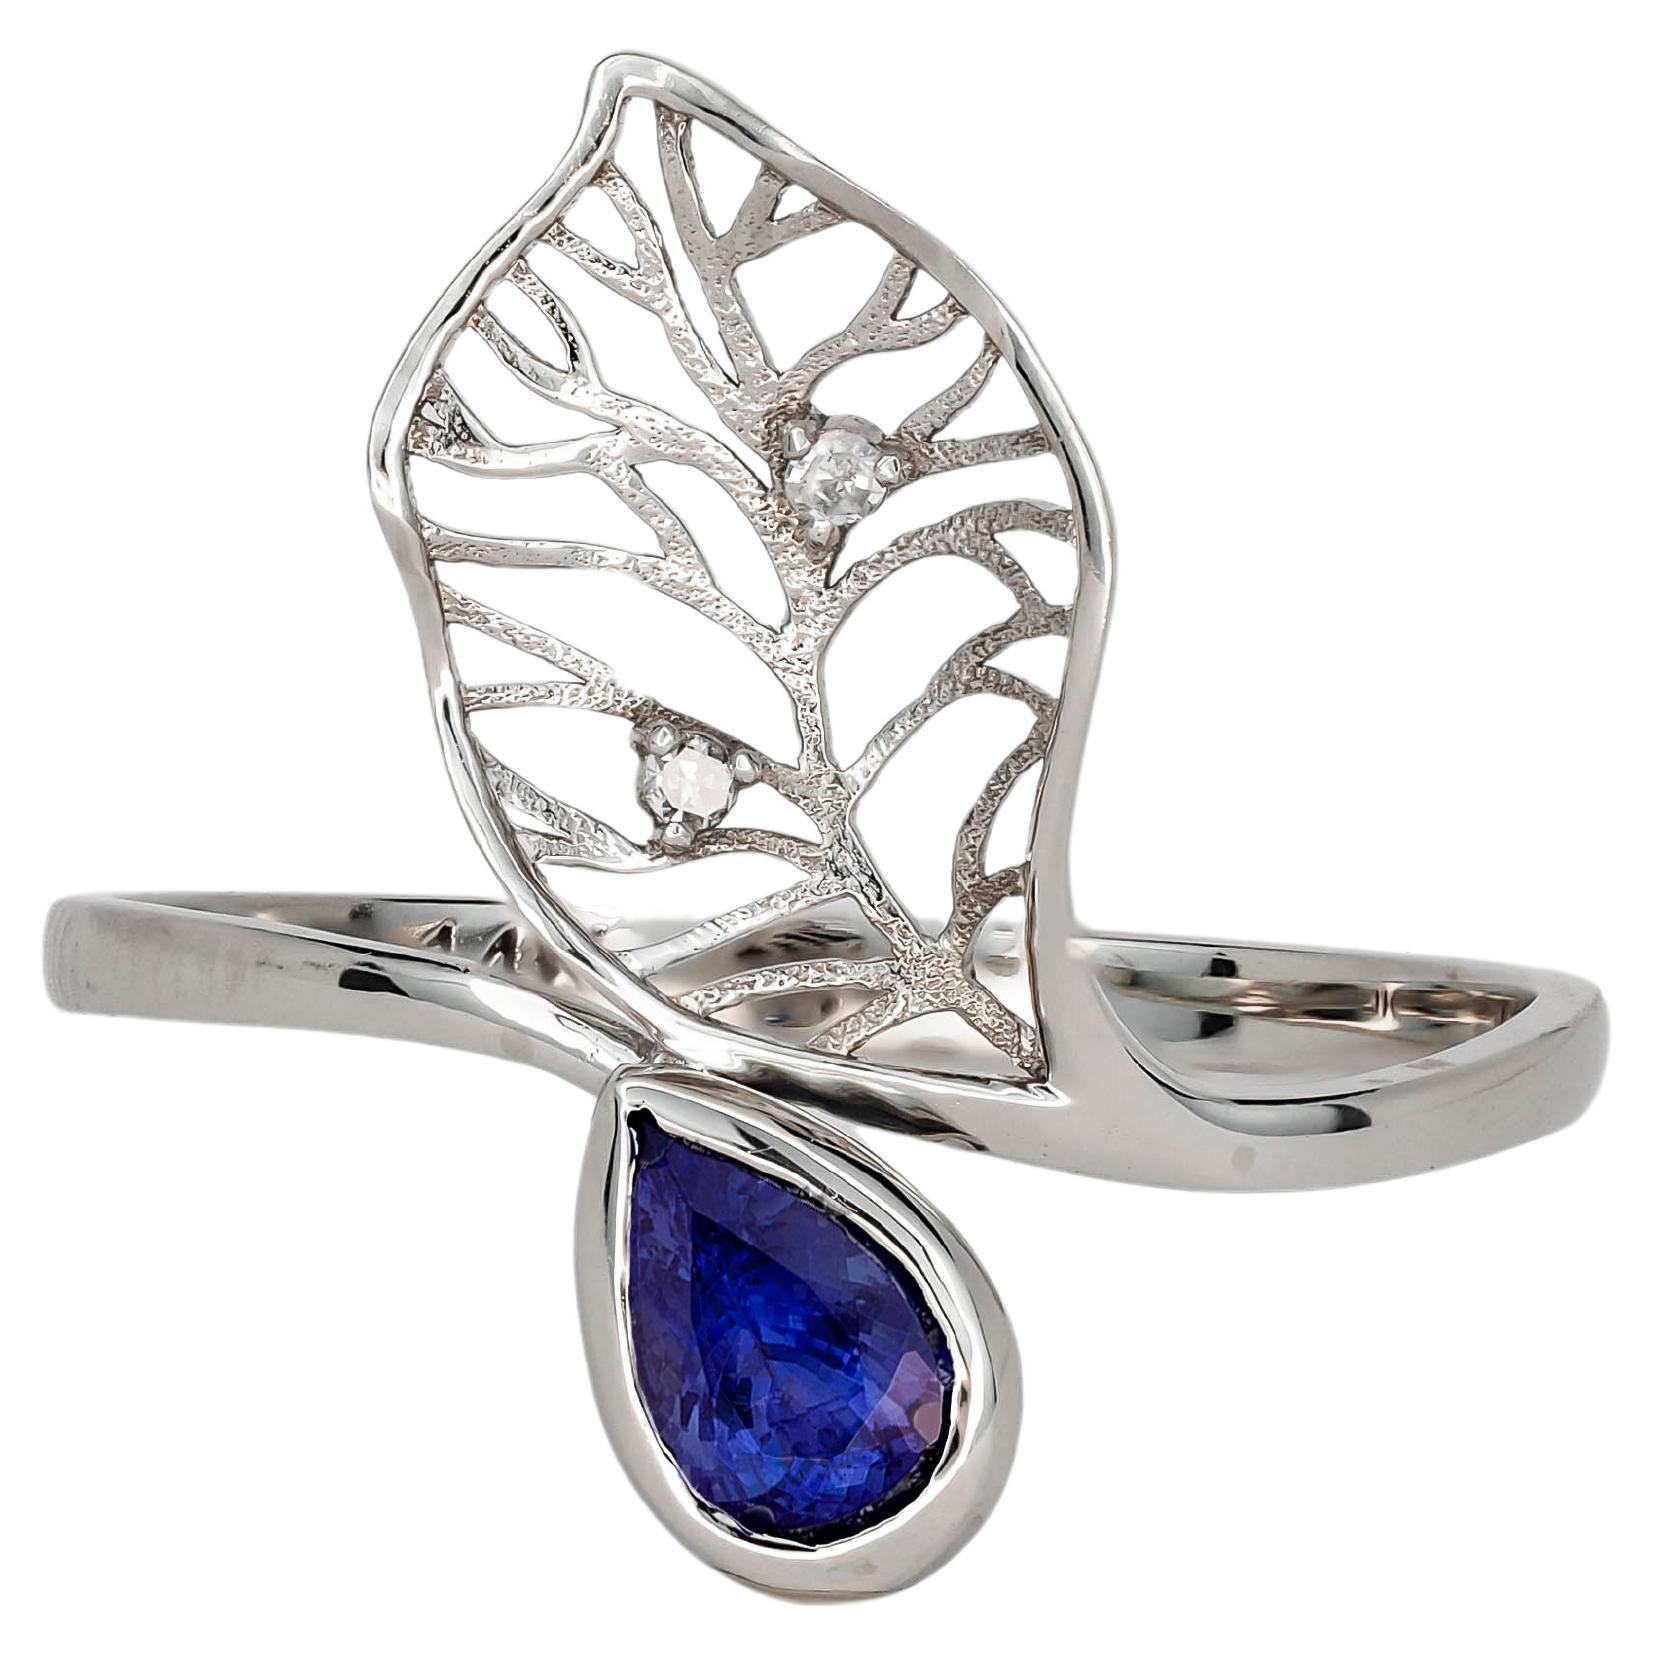 14 Karat Gold Ring mit Saphir und Diamanten. Ring mit floralem Design und Saphir